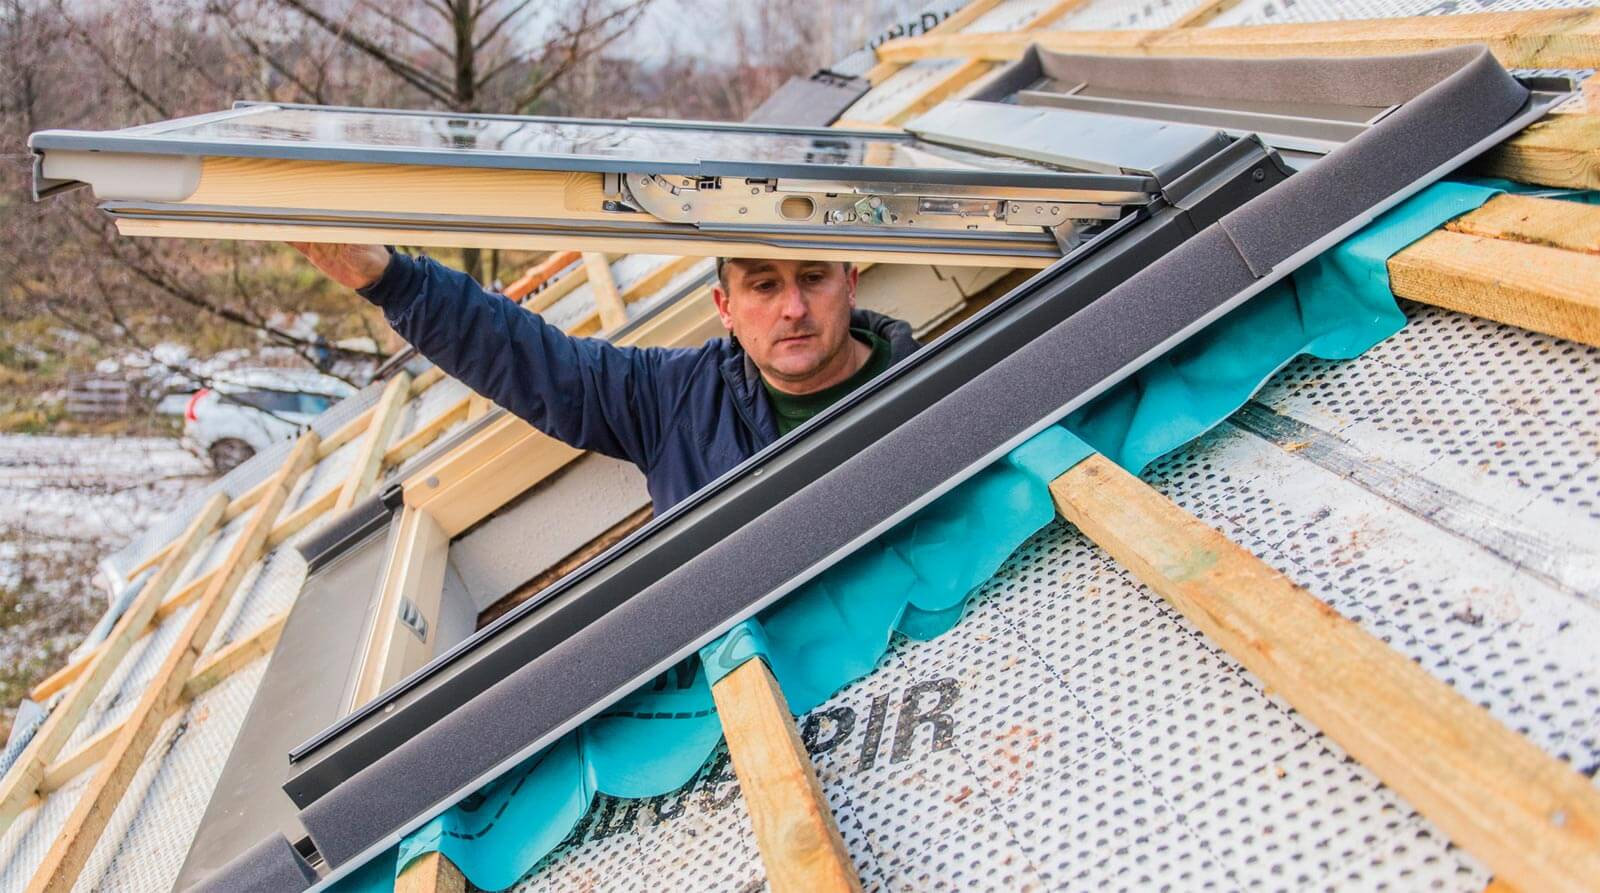 Montaż okna Fakro - Dekarz i Cieśla - serwis dla wykonawców dachów